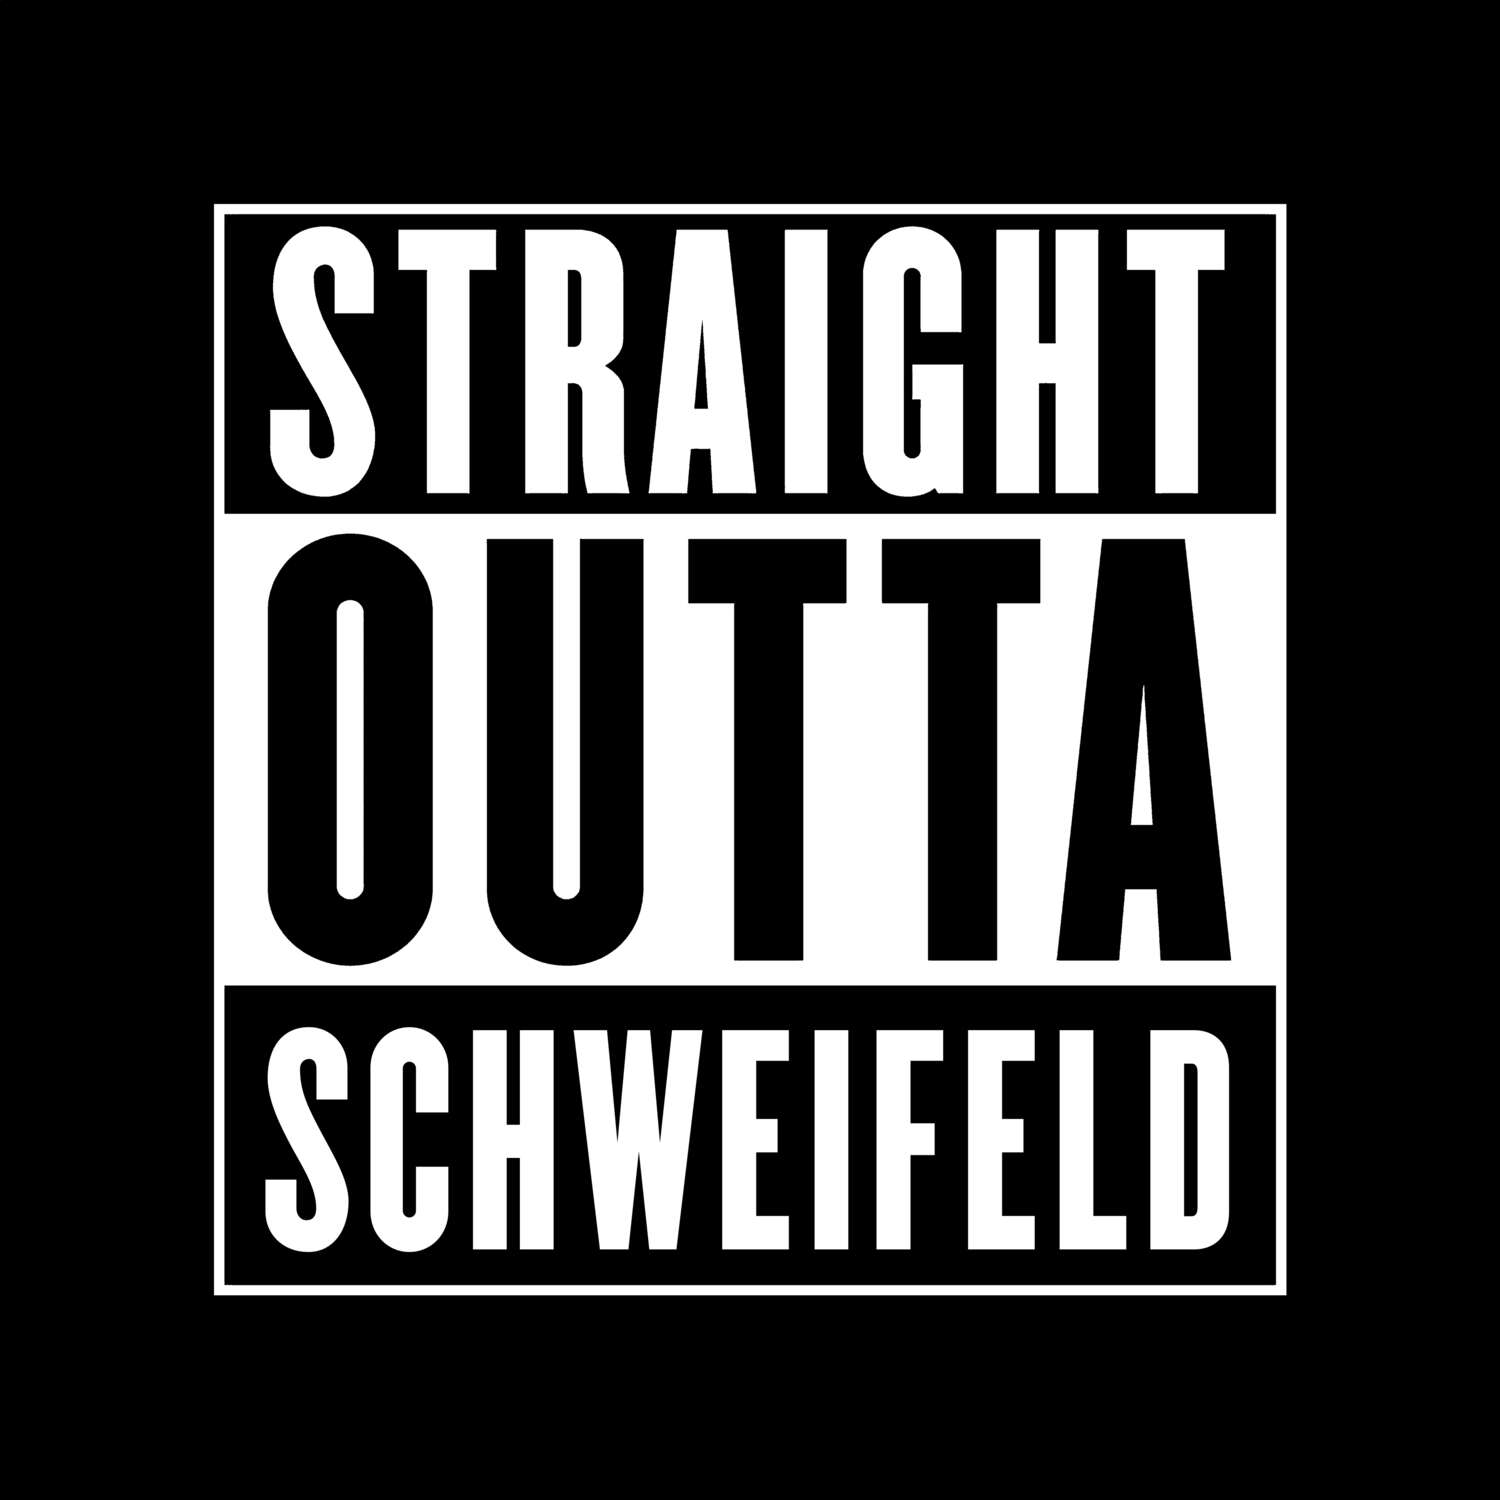 Schweifeld T-Shirt »Straight Outta«